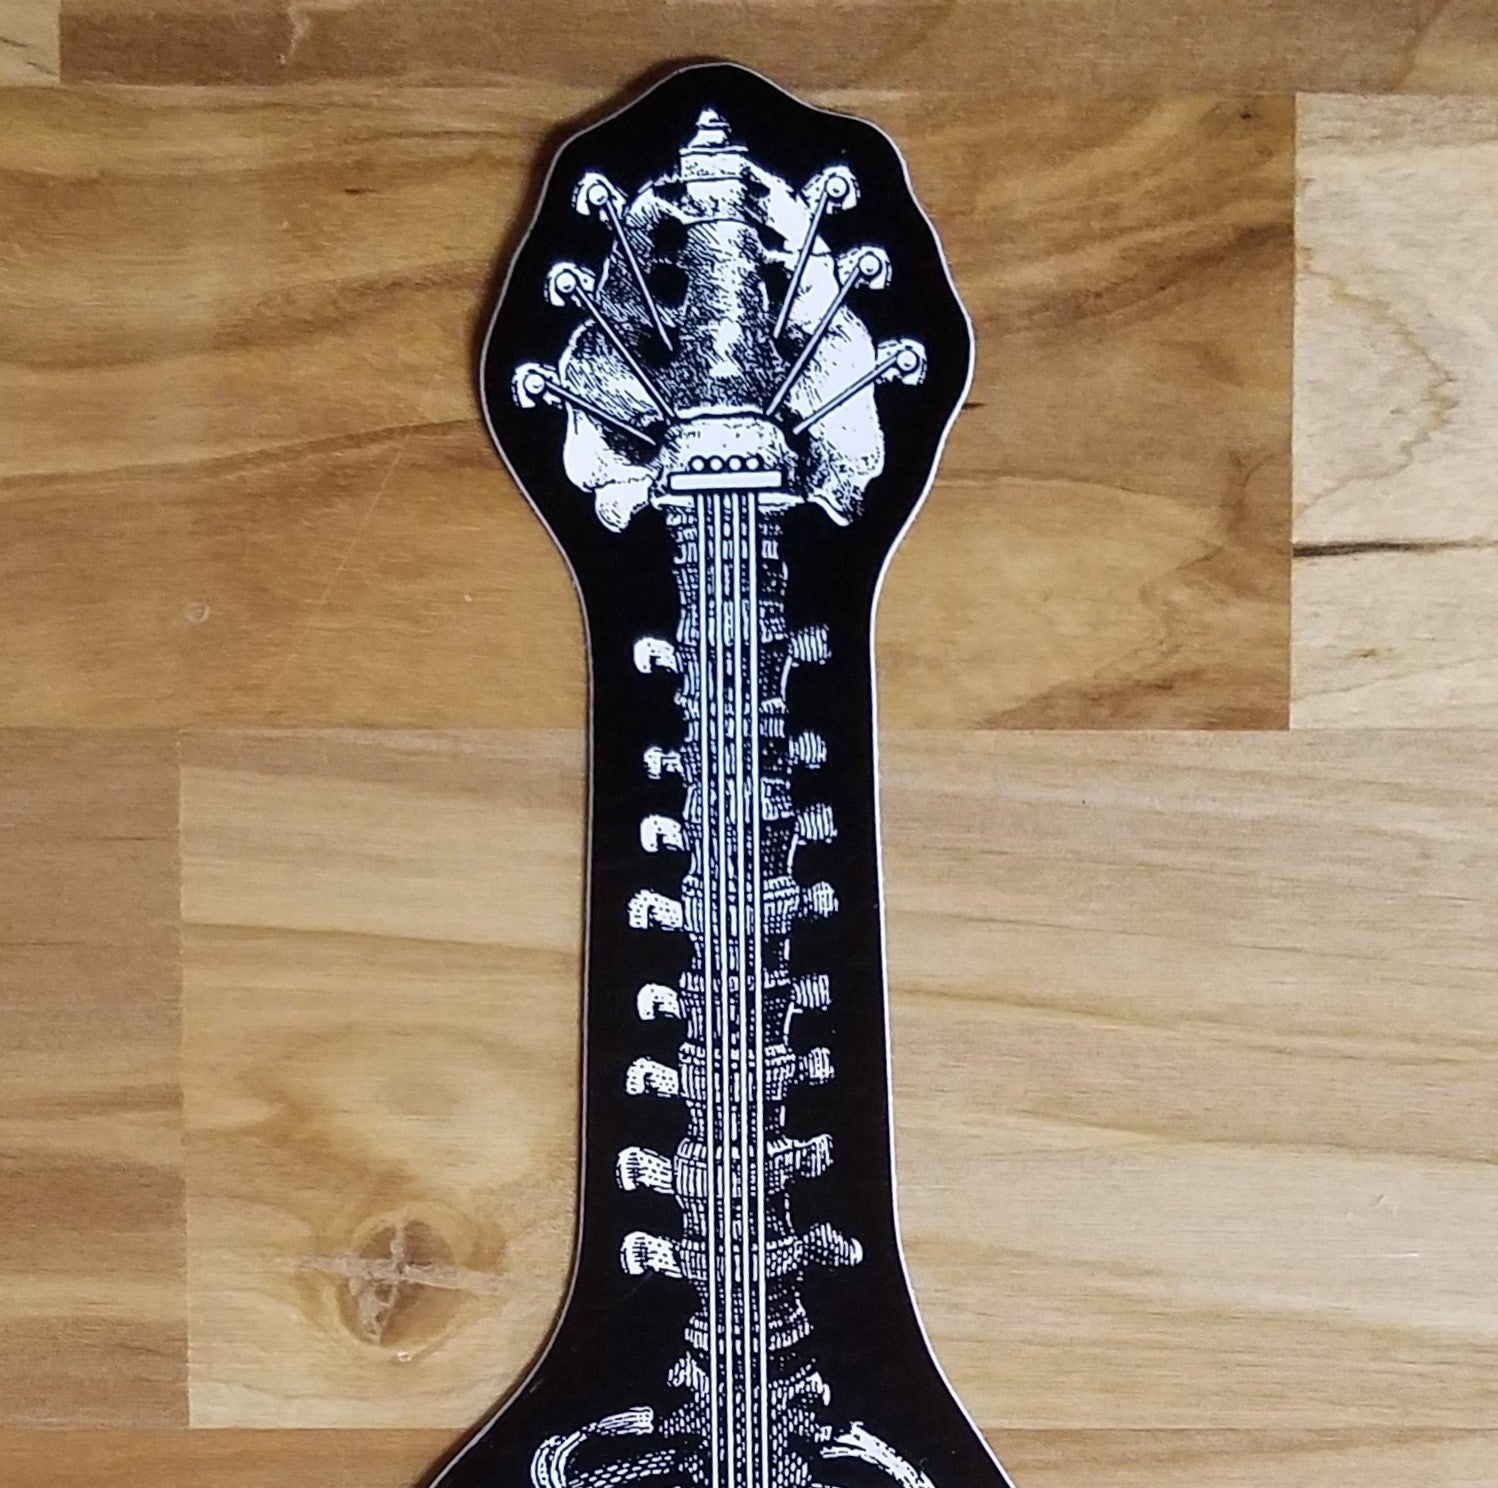 Emek - 2.5x6" Bone Guitar Sticker - Set of 10